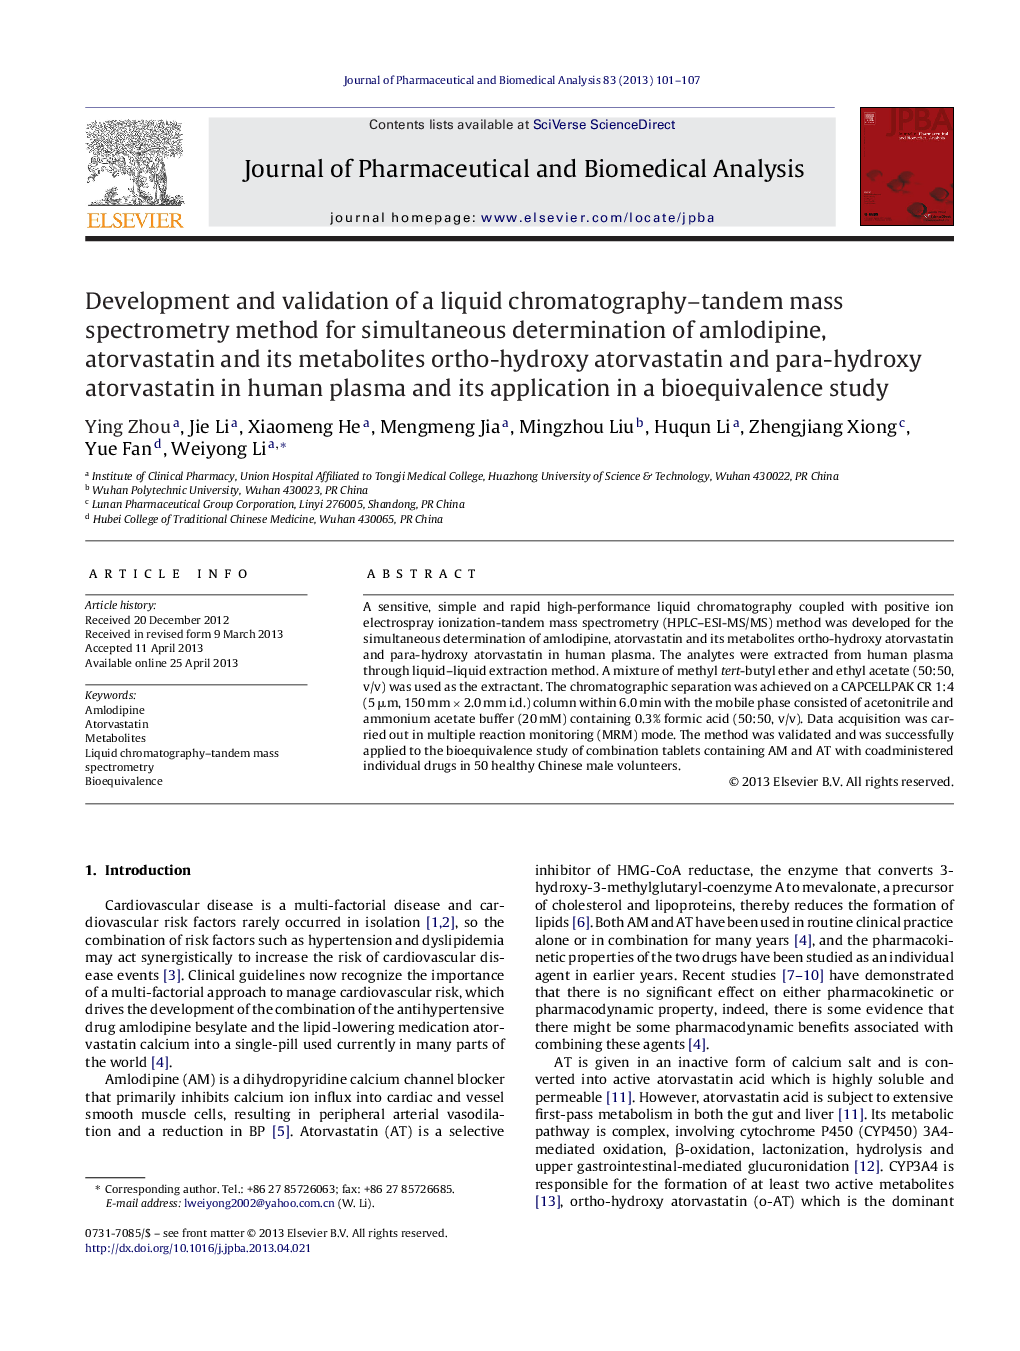 توسعه و اعتبار سنجی روش اسپکترومتری جرمی کروماتوگرافی-دوبعدی برای تعیین همزمان آملودیپین، آتورواستاتین و متابولیتهای آن، ارتو هیدروکسی آتورواستاتین و پارا هیدروکسی آتورواستاتین در پلاسمای انسانی و کاربرد آن 